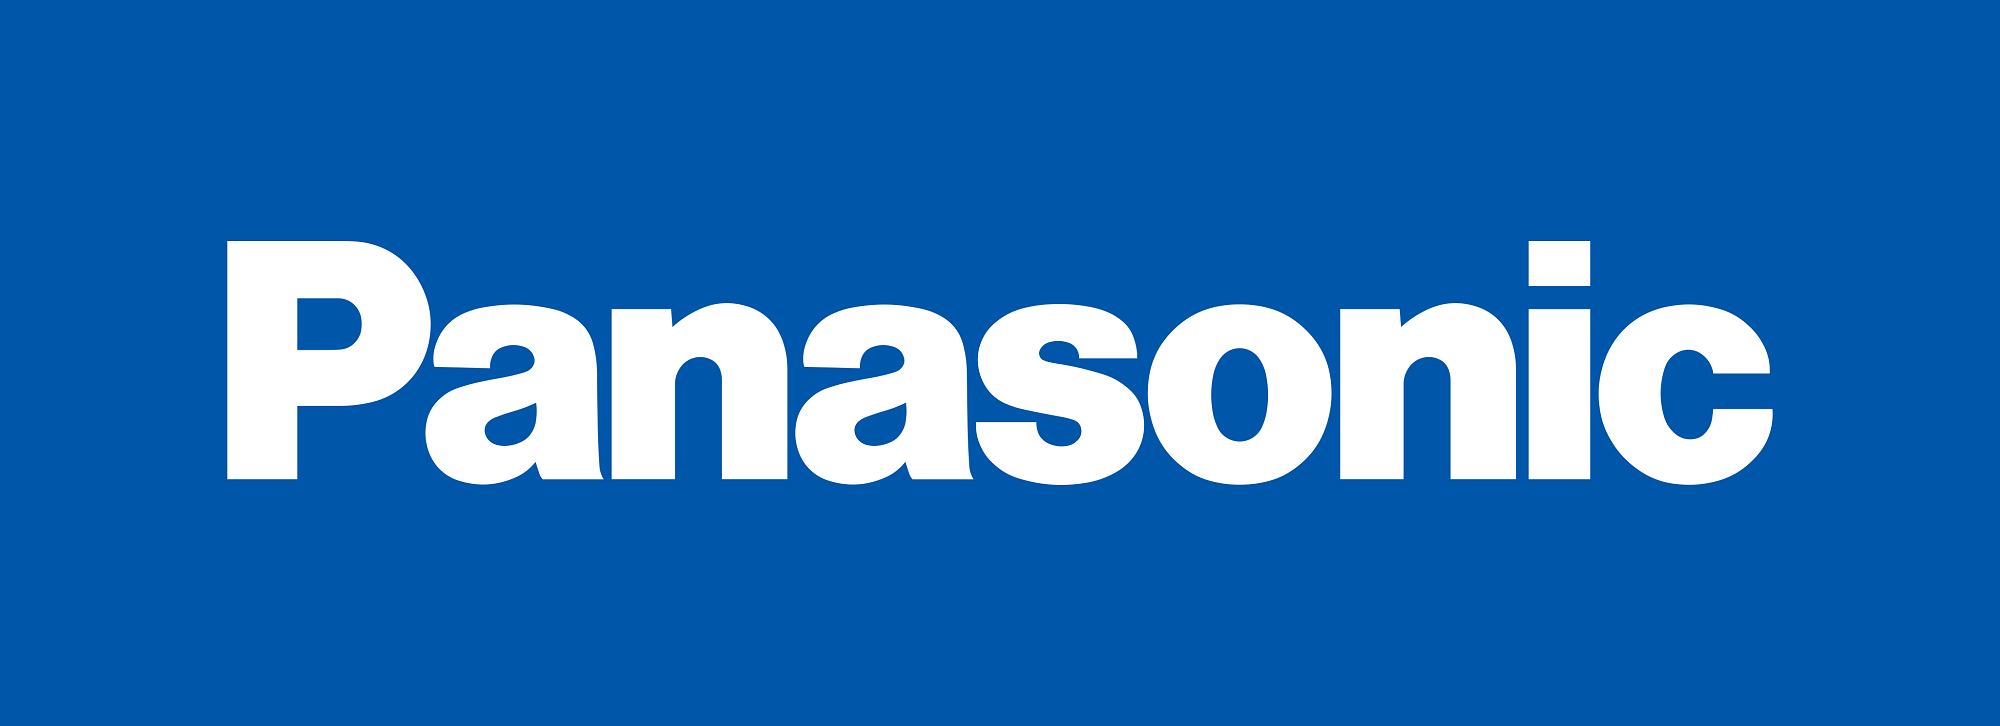 Banner Panasonic